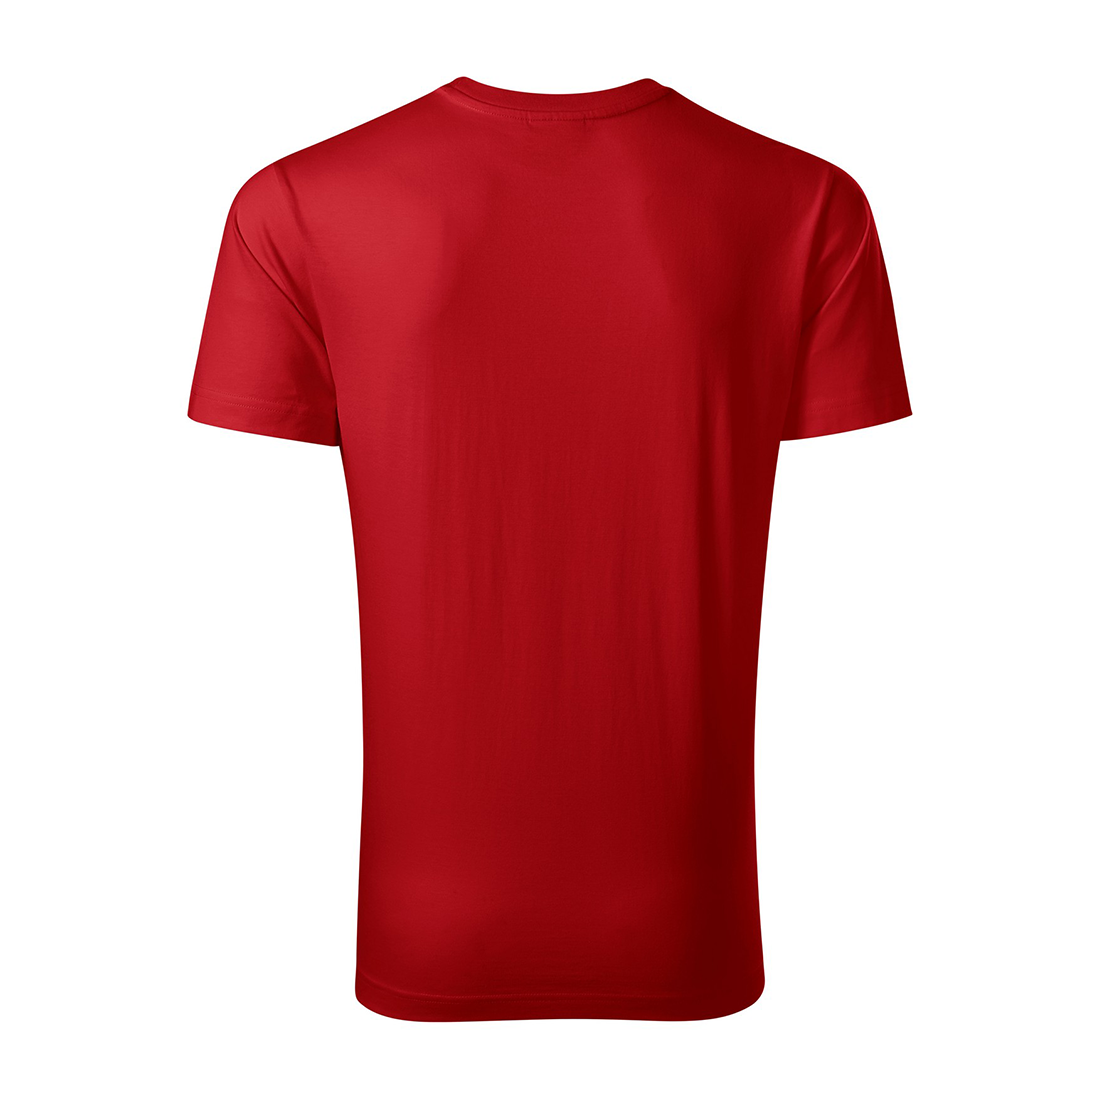 Herren-T-Shirt aus vorgewaschener Baumwolle - Arbeitskleidung